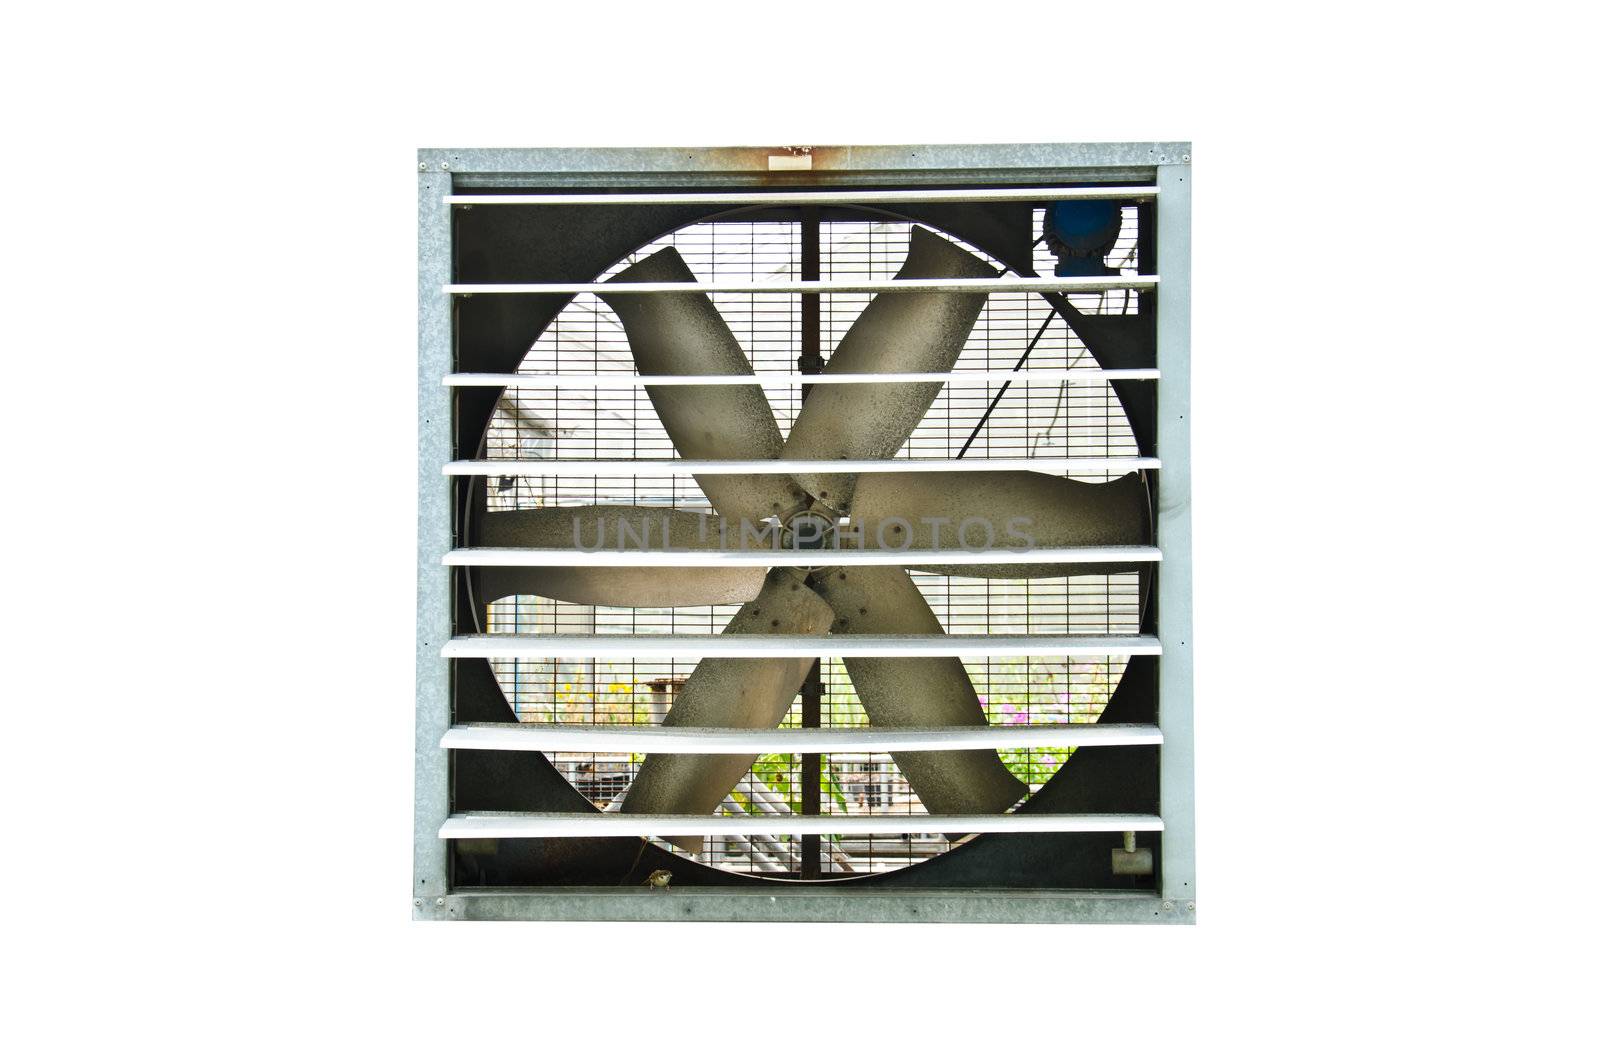 Industrial ventilator fan on white background